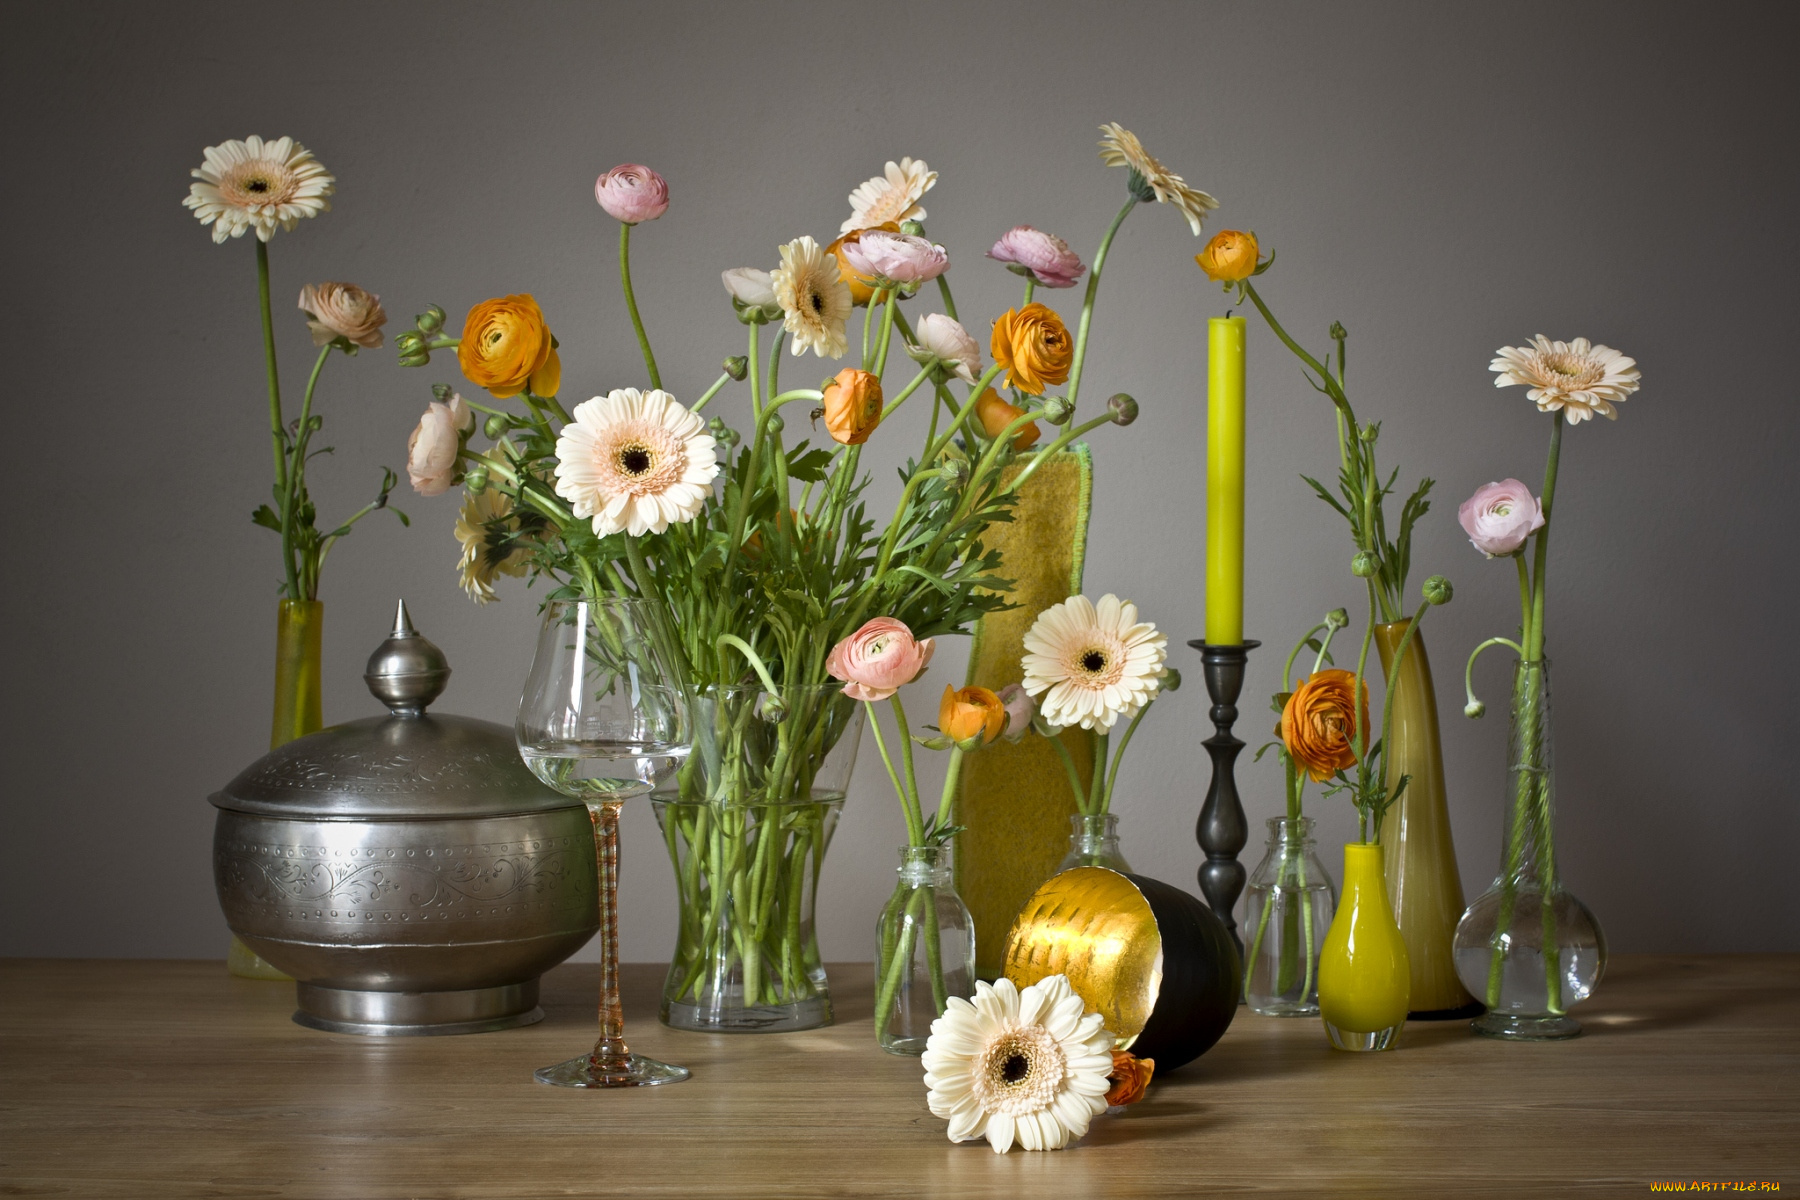 цветы, разные, вместе, вазы, натюрморт, свеча, ранункулюс, герберы